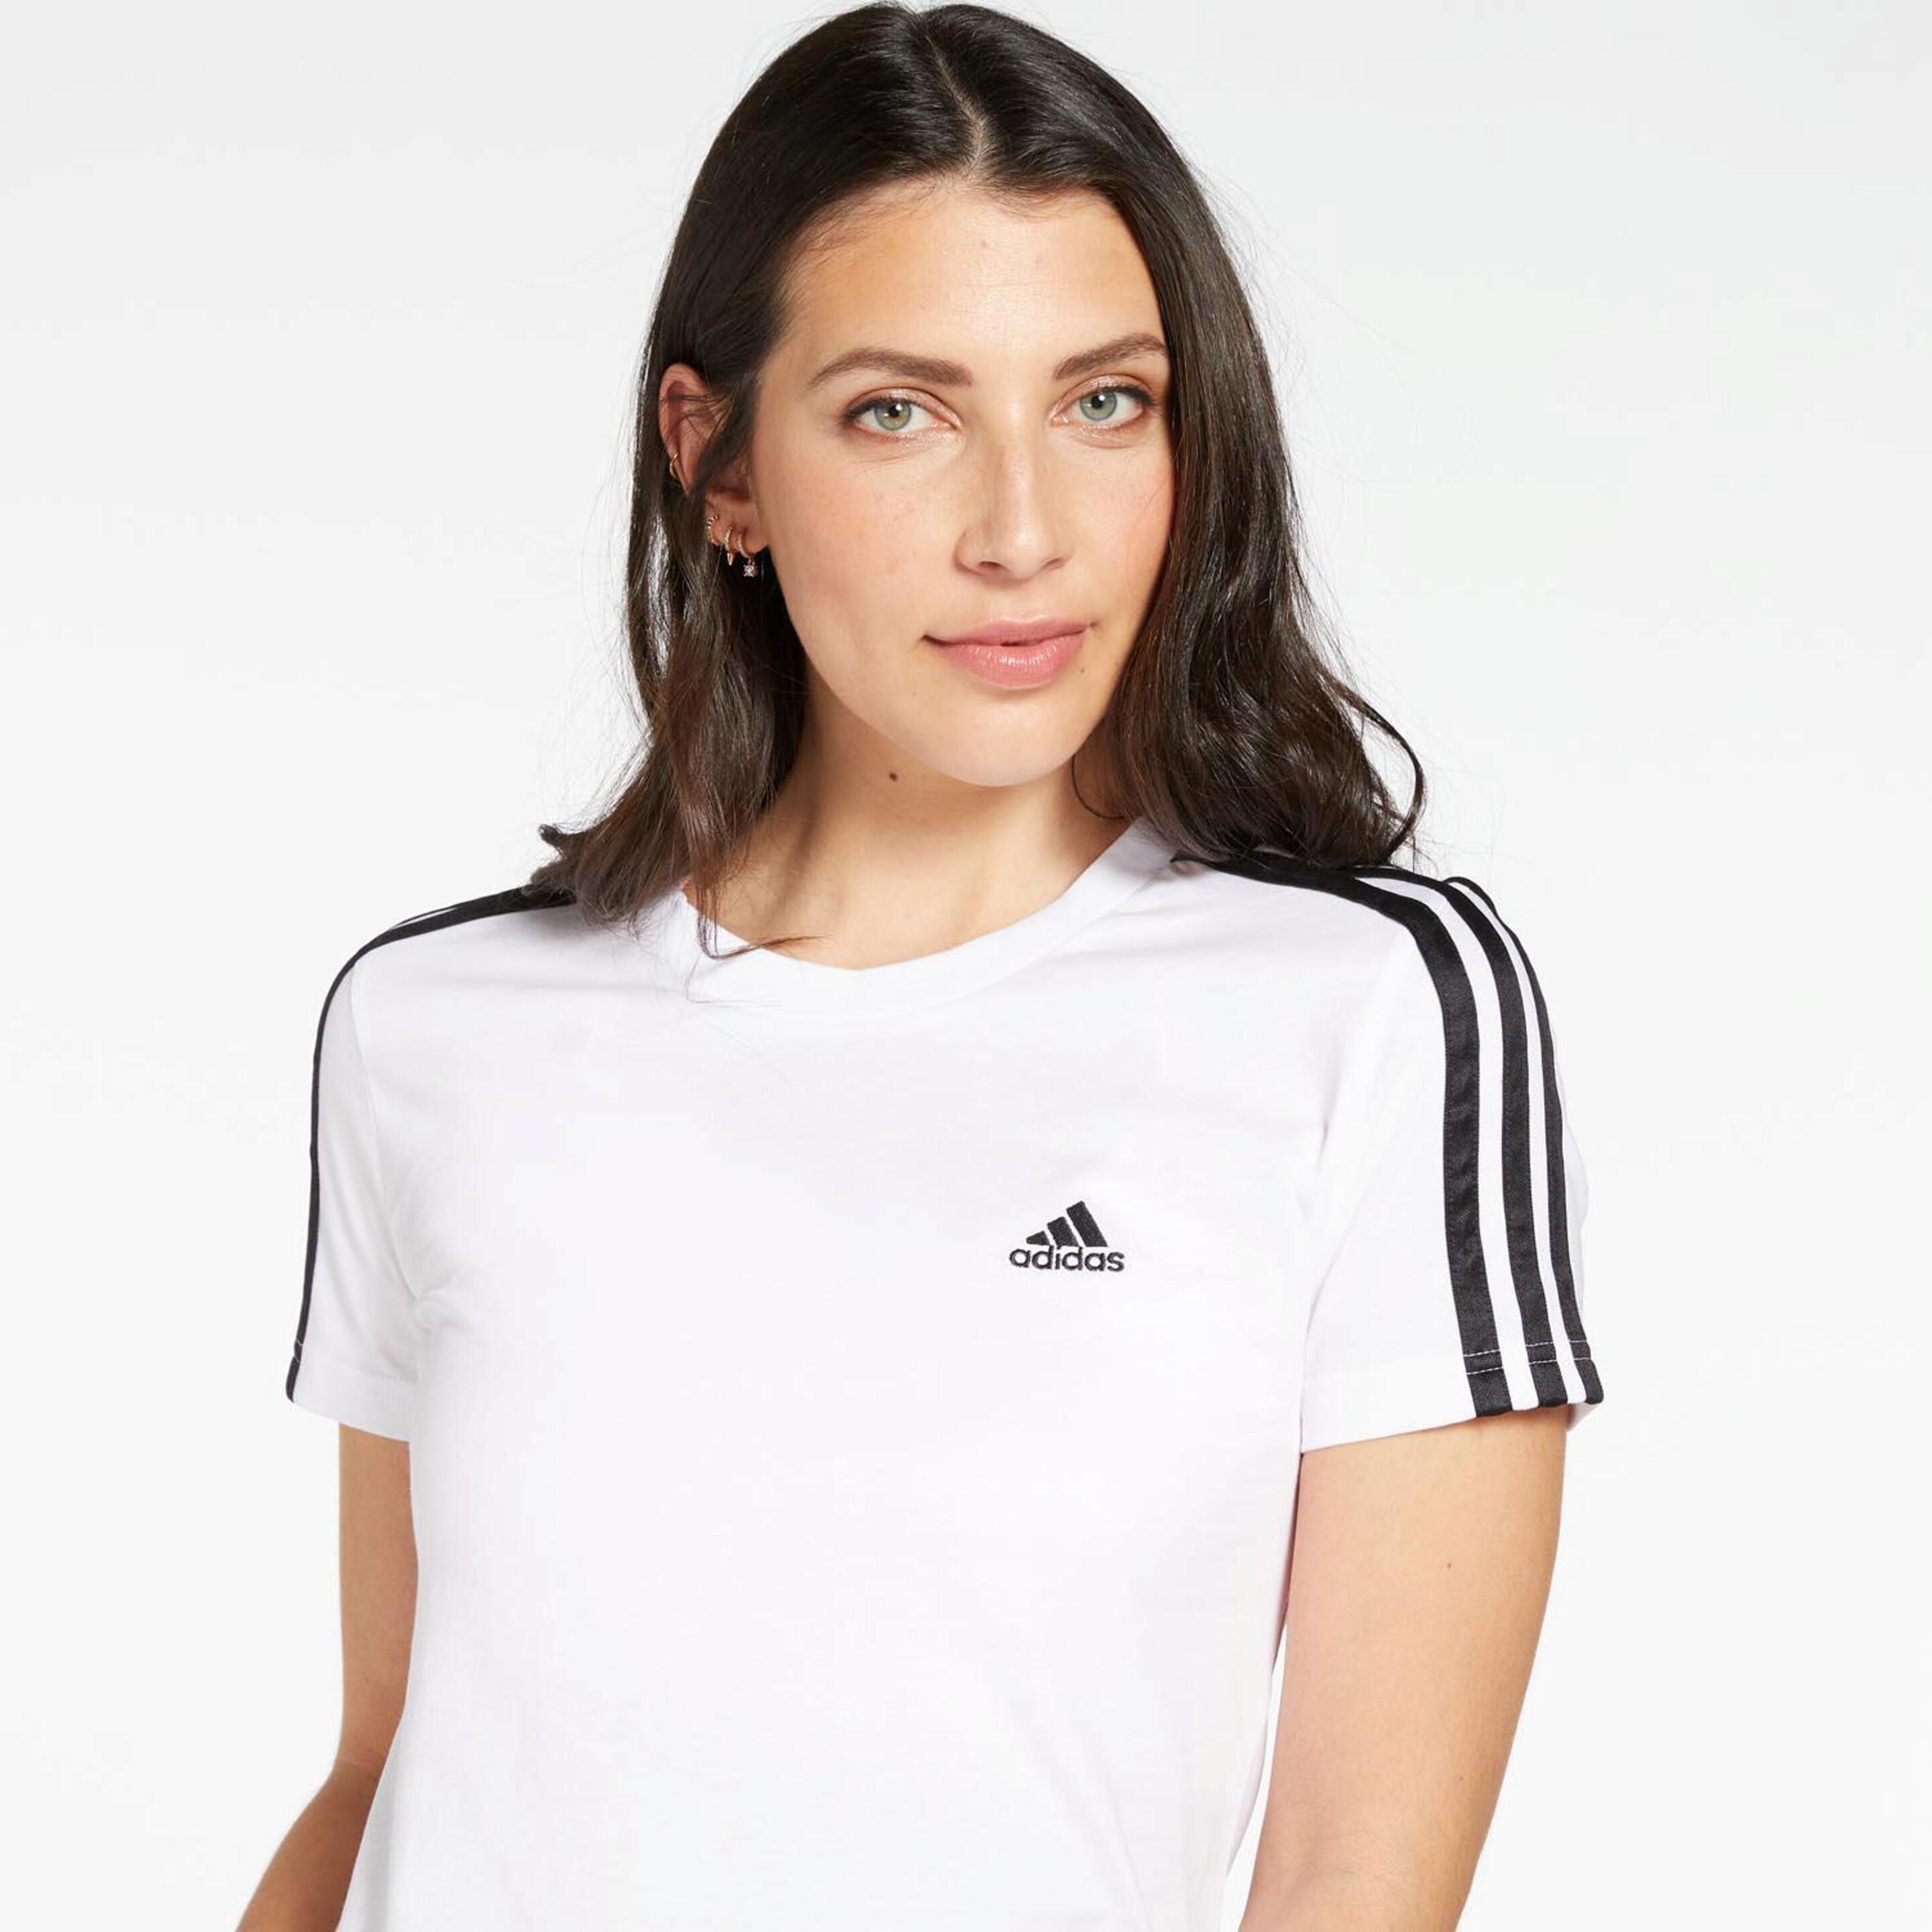 adidas 3 Stripes - blanco - Camiseta Mujer